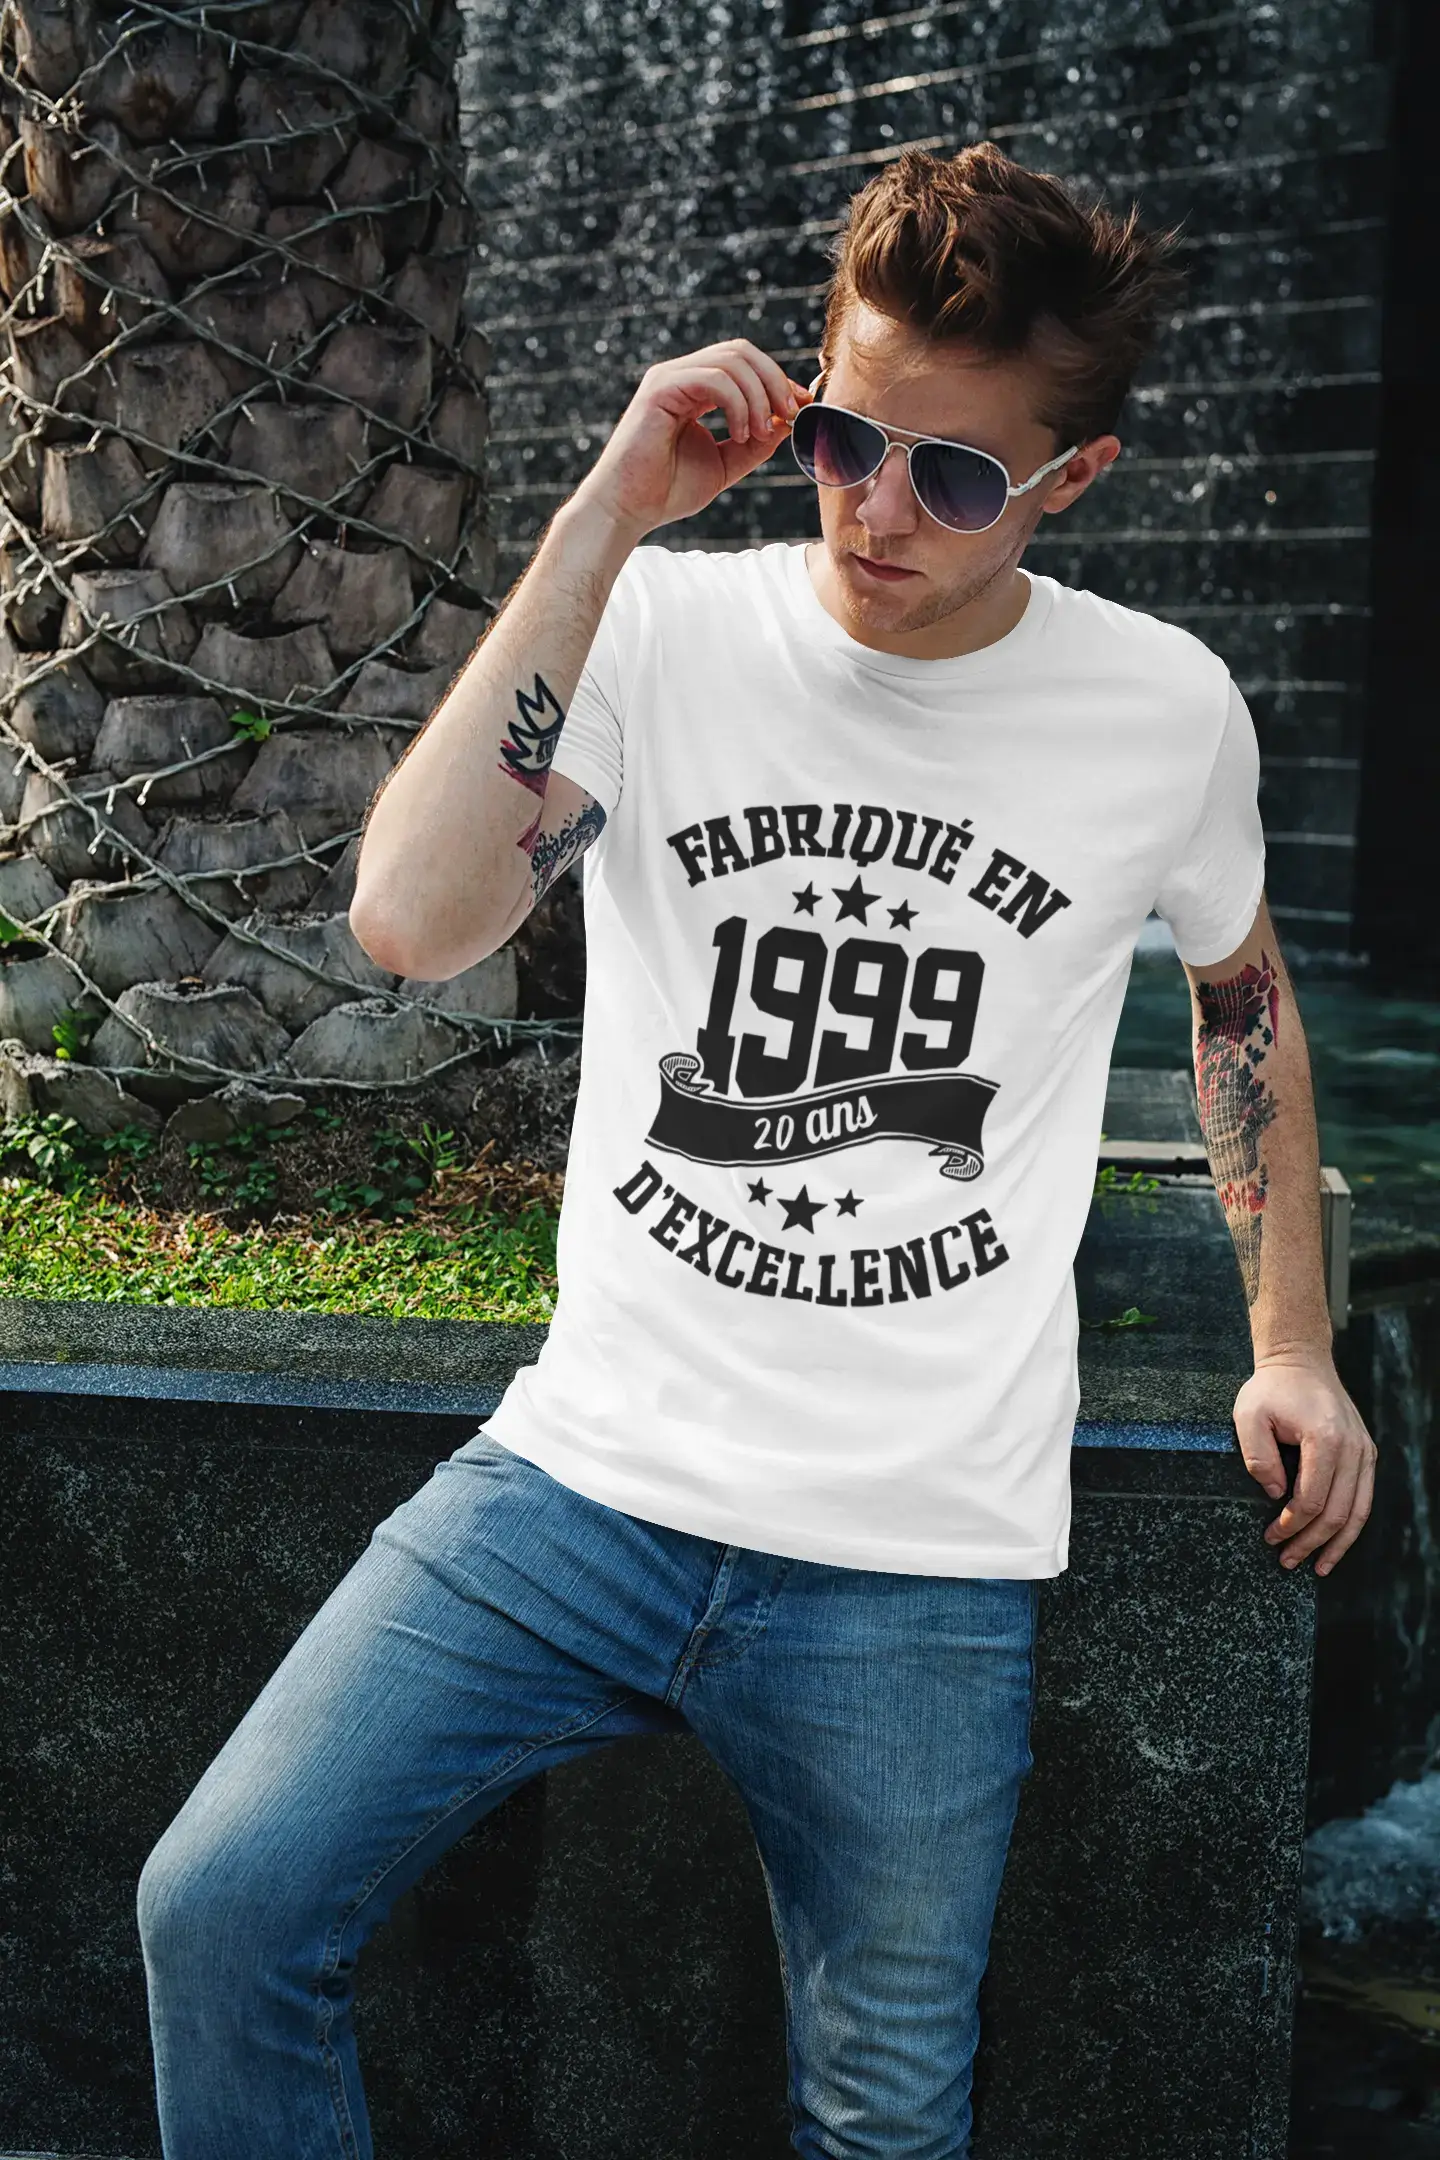 ULTRABASIC - Fabriqué en 1999, 20 Ans d'être Génial Unisex T-Shirt Blanc Chiné